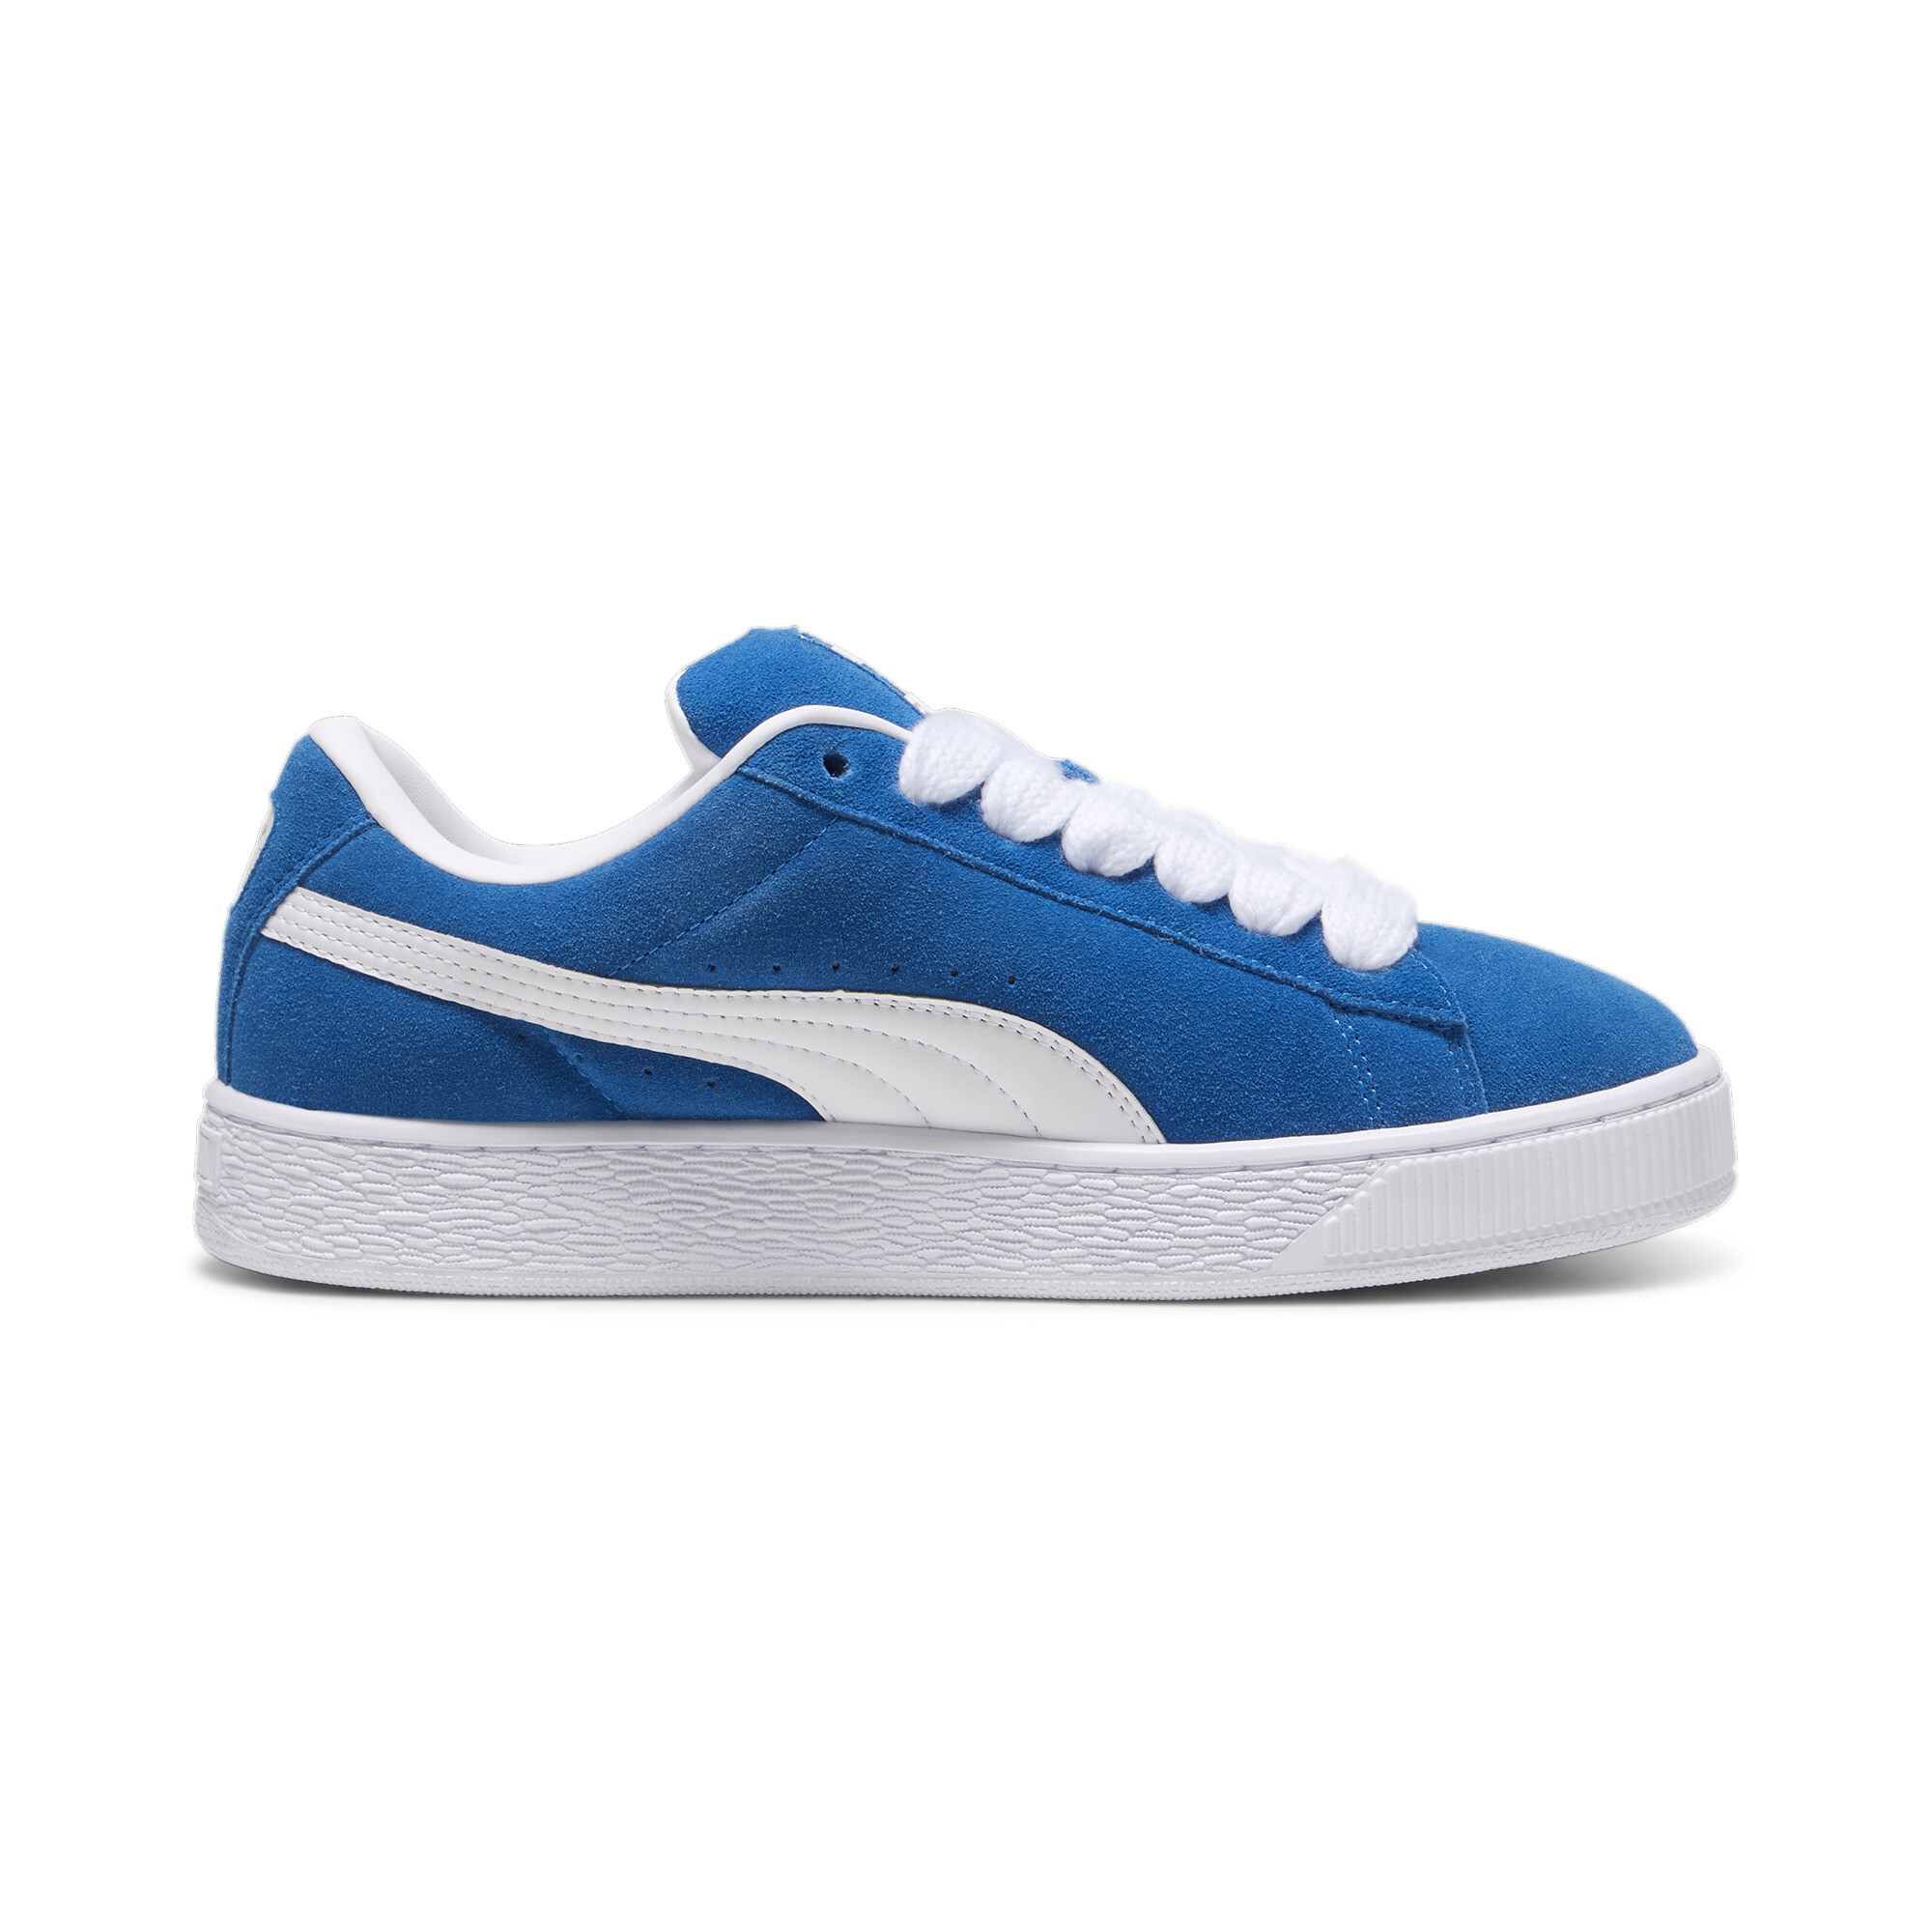 Puma Suede XL Sneakers Unisex, Blue, Size 35.5, Shoes